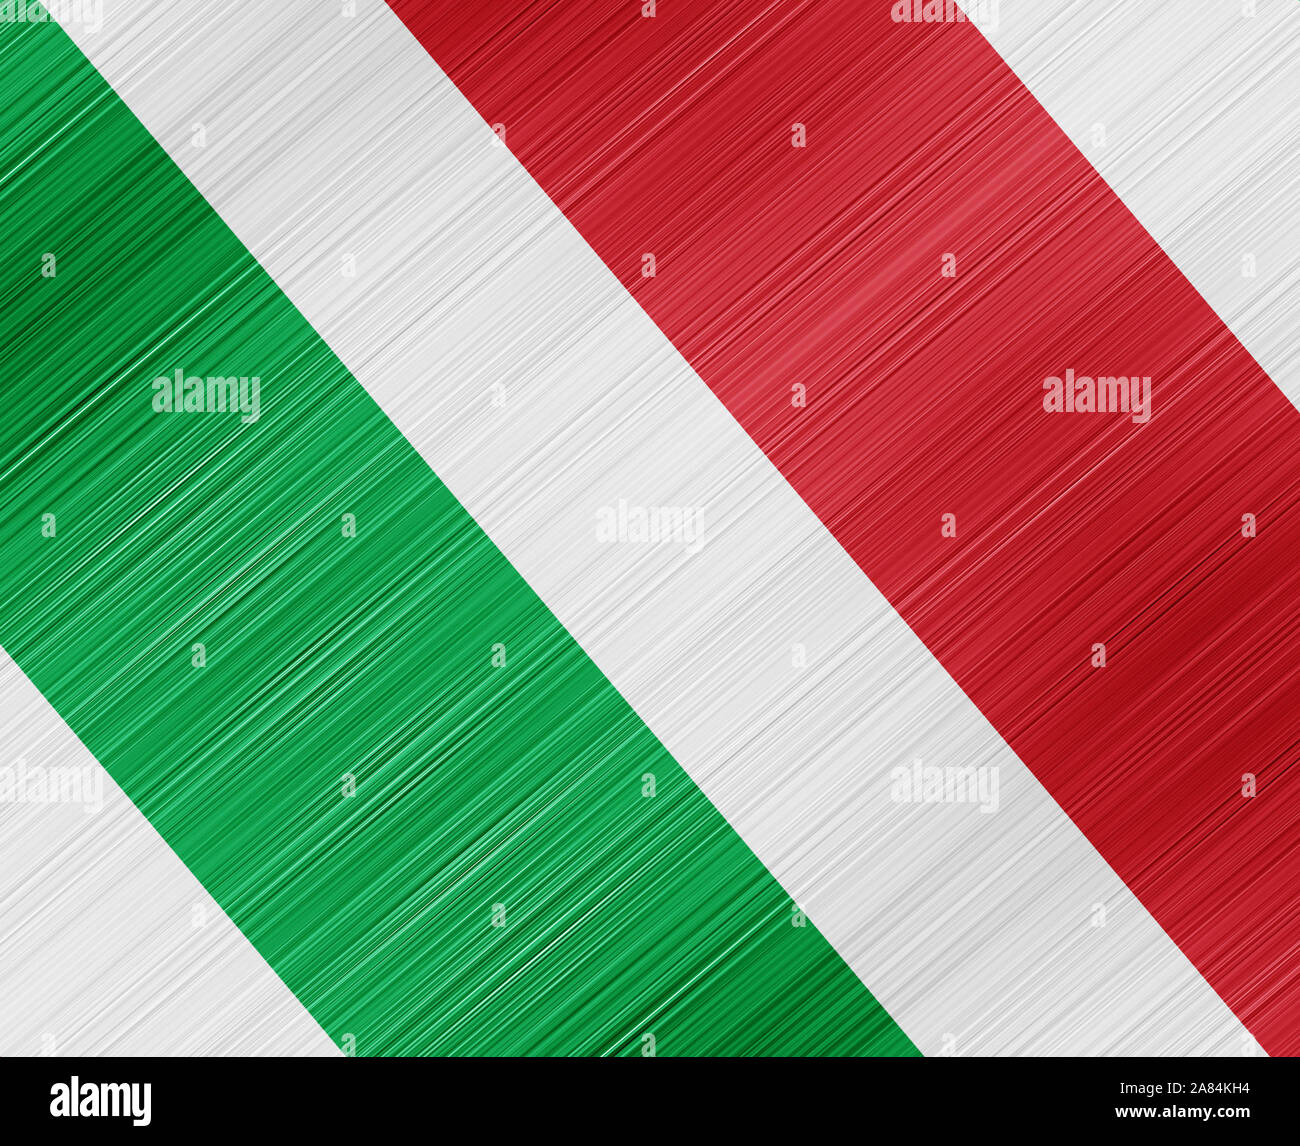 Bandera blanca verde roja fotografías e imágenes de alta resolución - Alamy